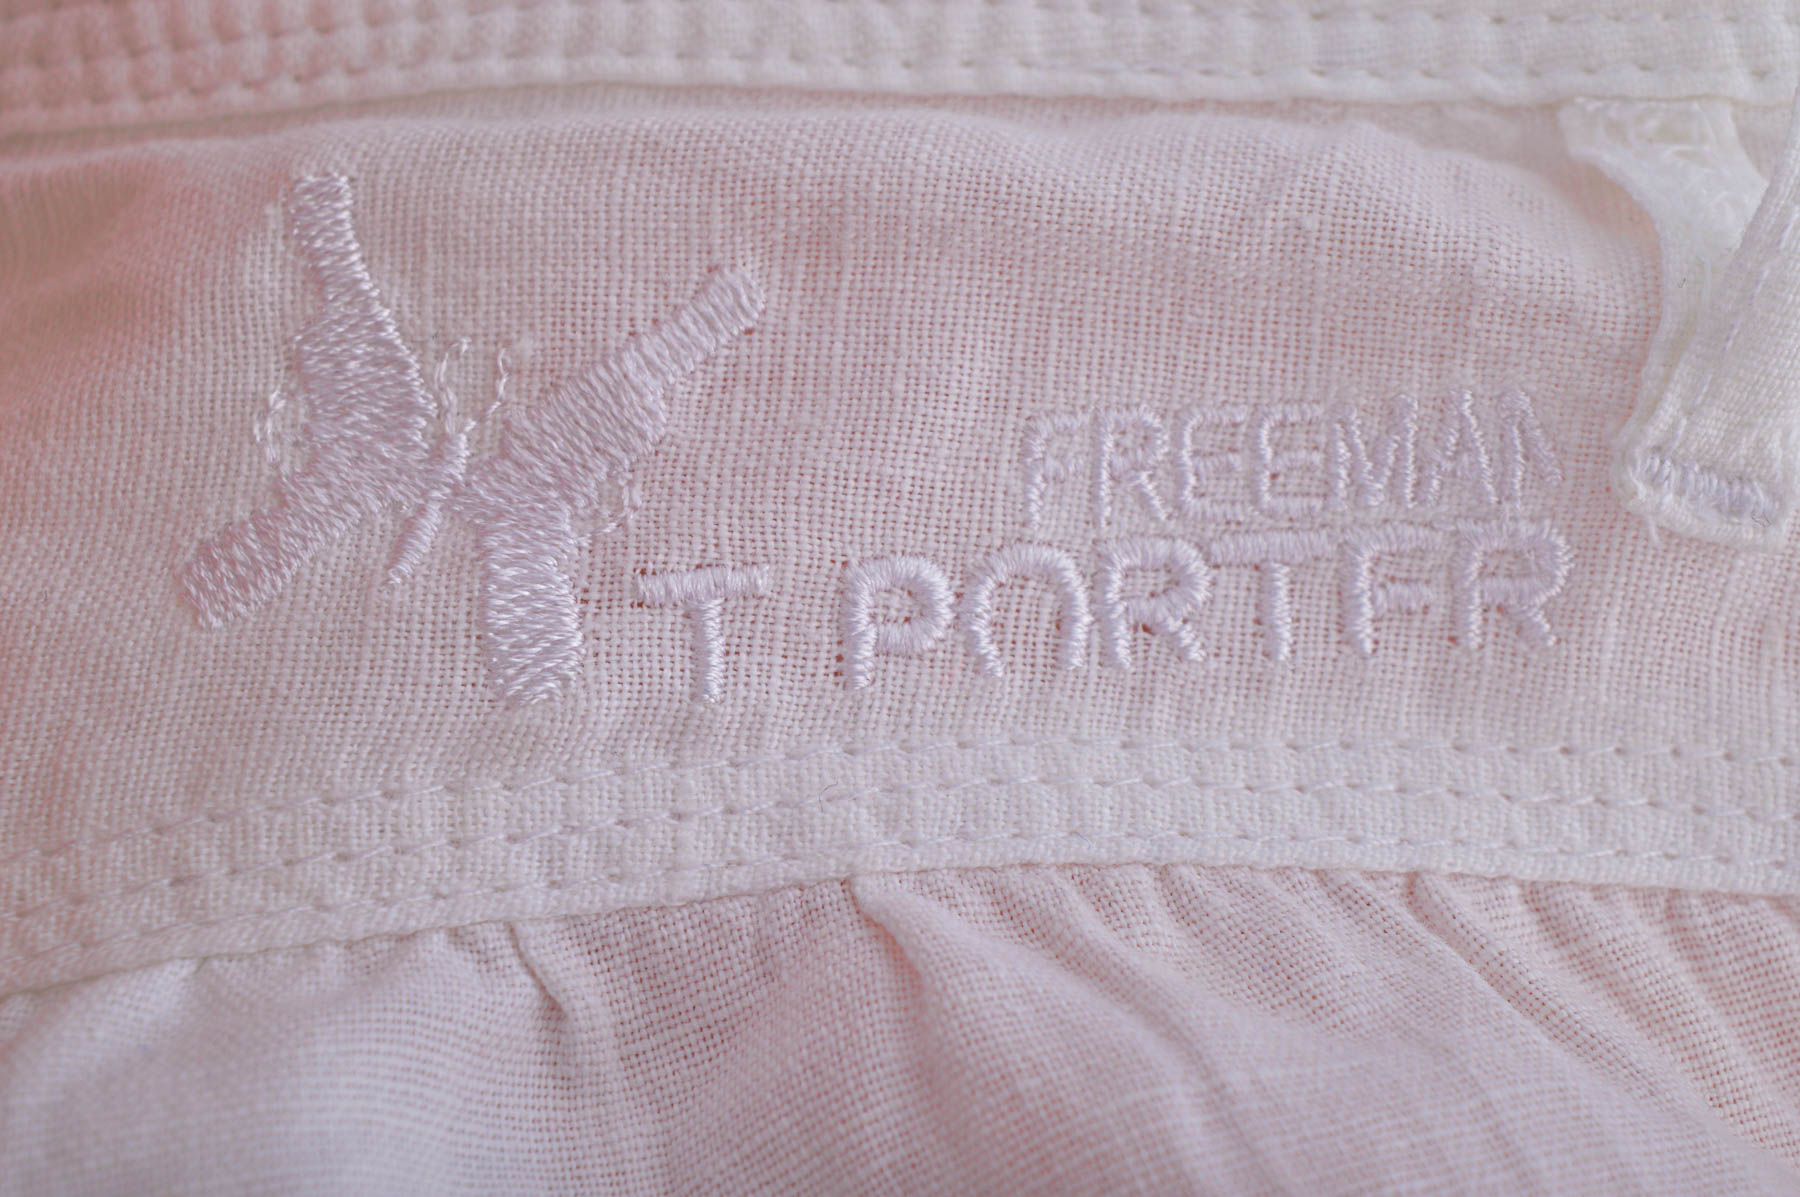 Дамски къси панталони - Freeman T. Porter - 2